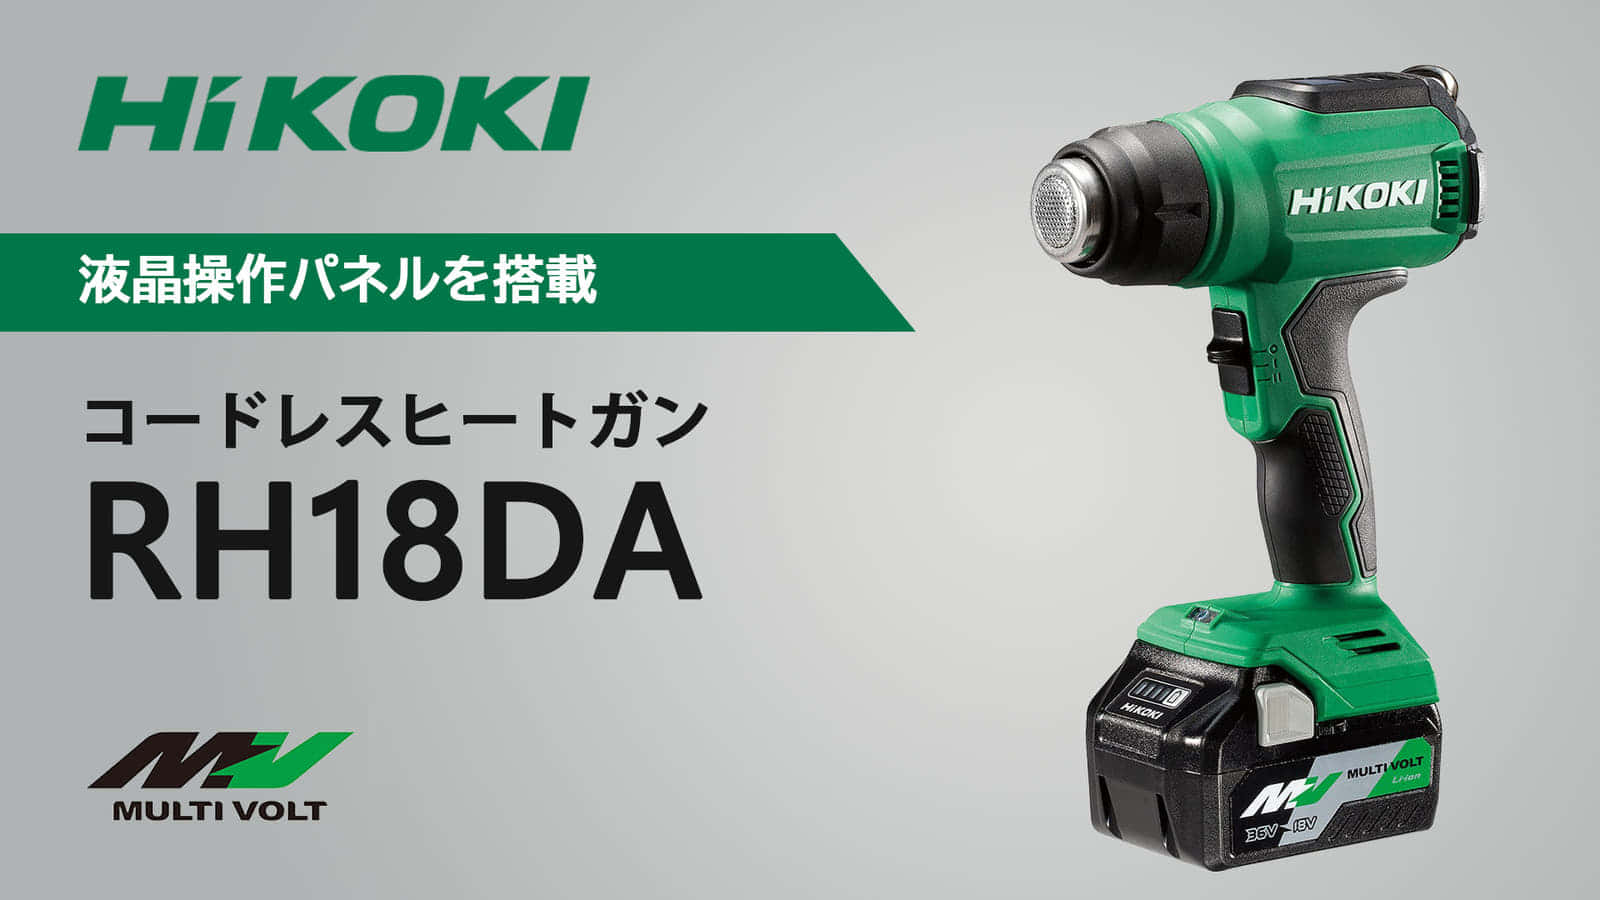 HiKOKI RH18DA コードレスヒートガンを発売、温度550度・風量300L/minの強力モデル